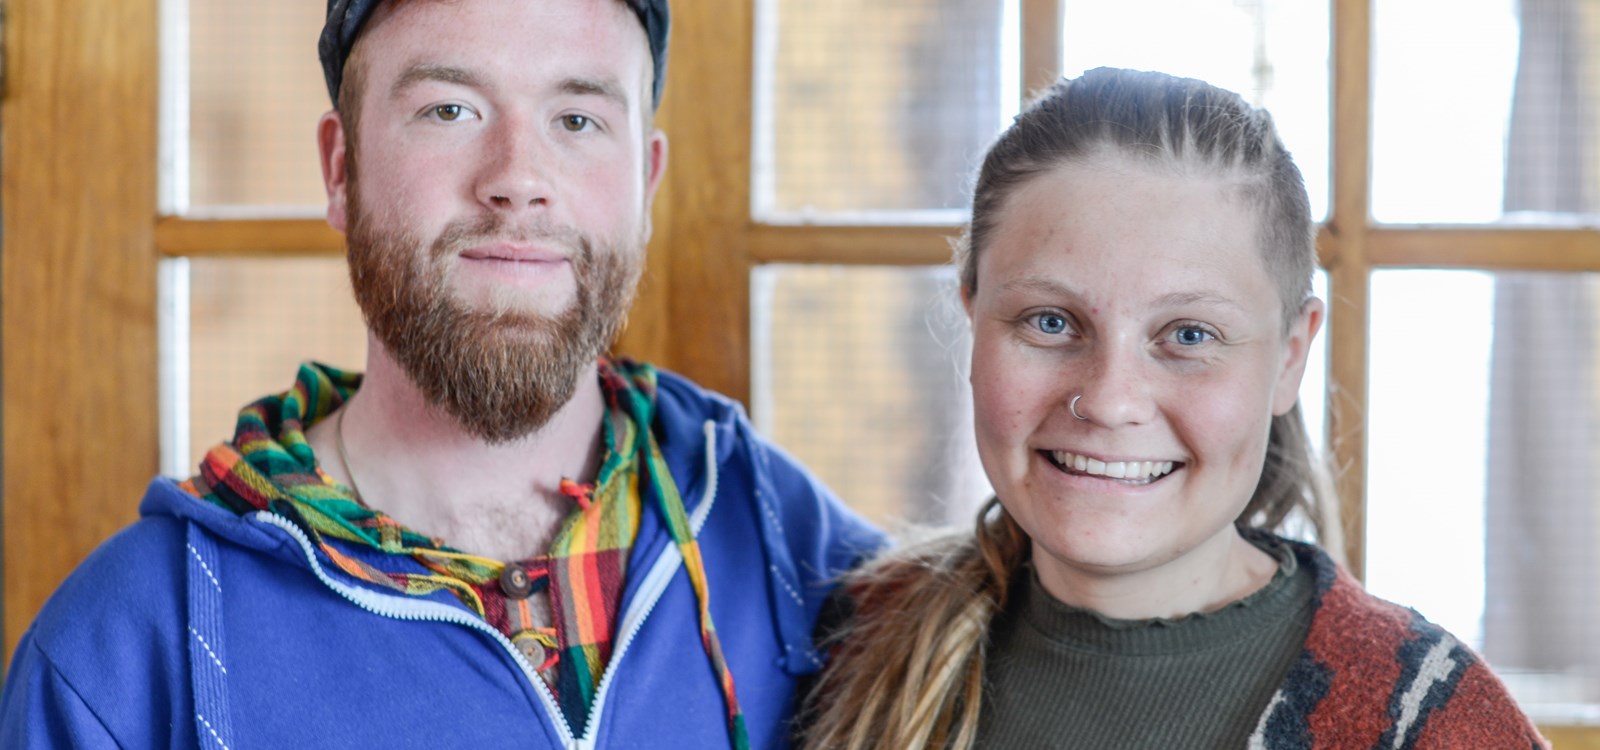 Ei verkeleg flott reportasje om Ingun og Tobias som har realisert gardsdraumen på Eikra i Høre gjekk på Opptur i Vinter.